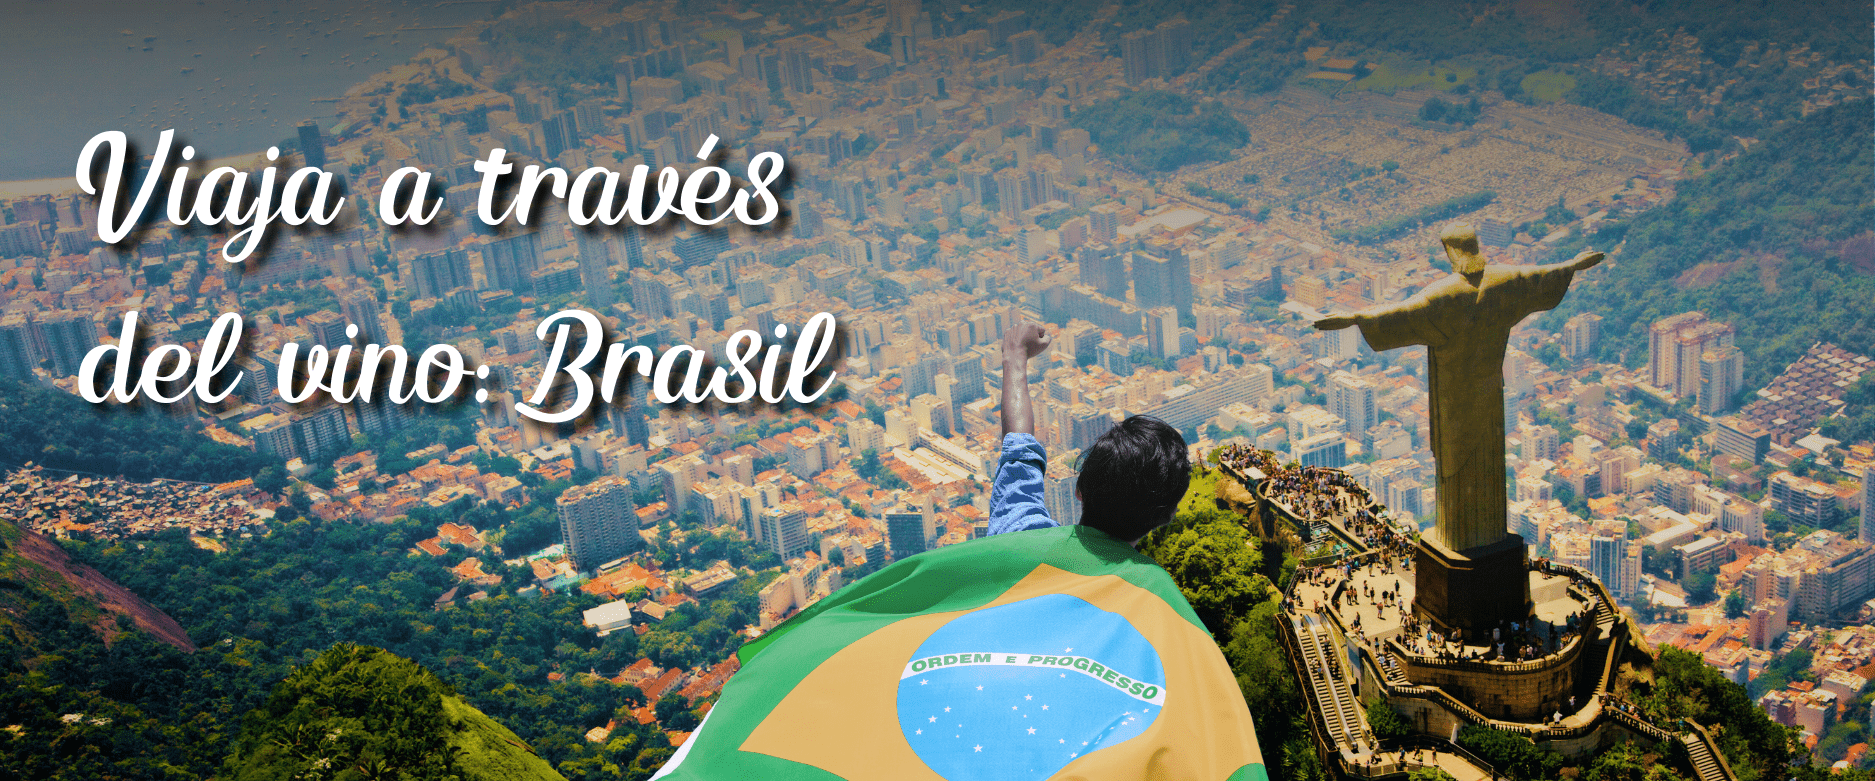 Viaja a través del vino: Brasil